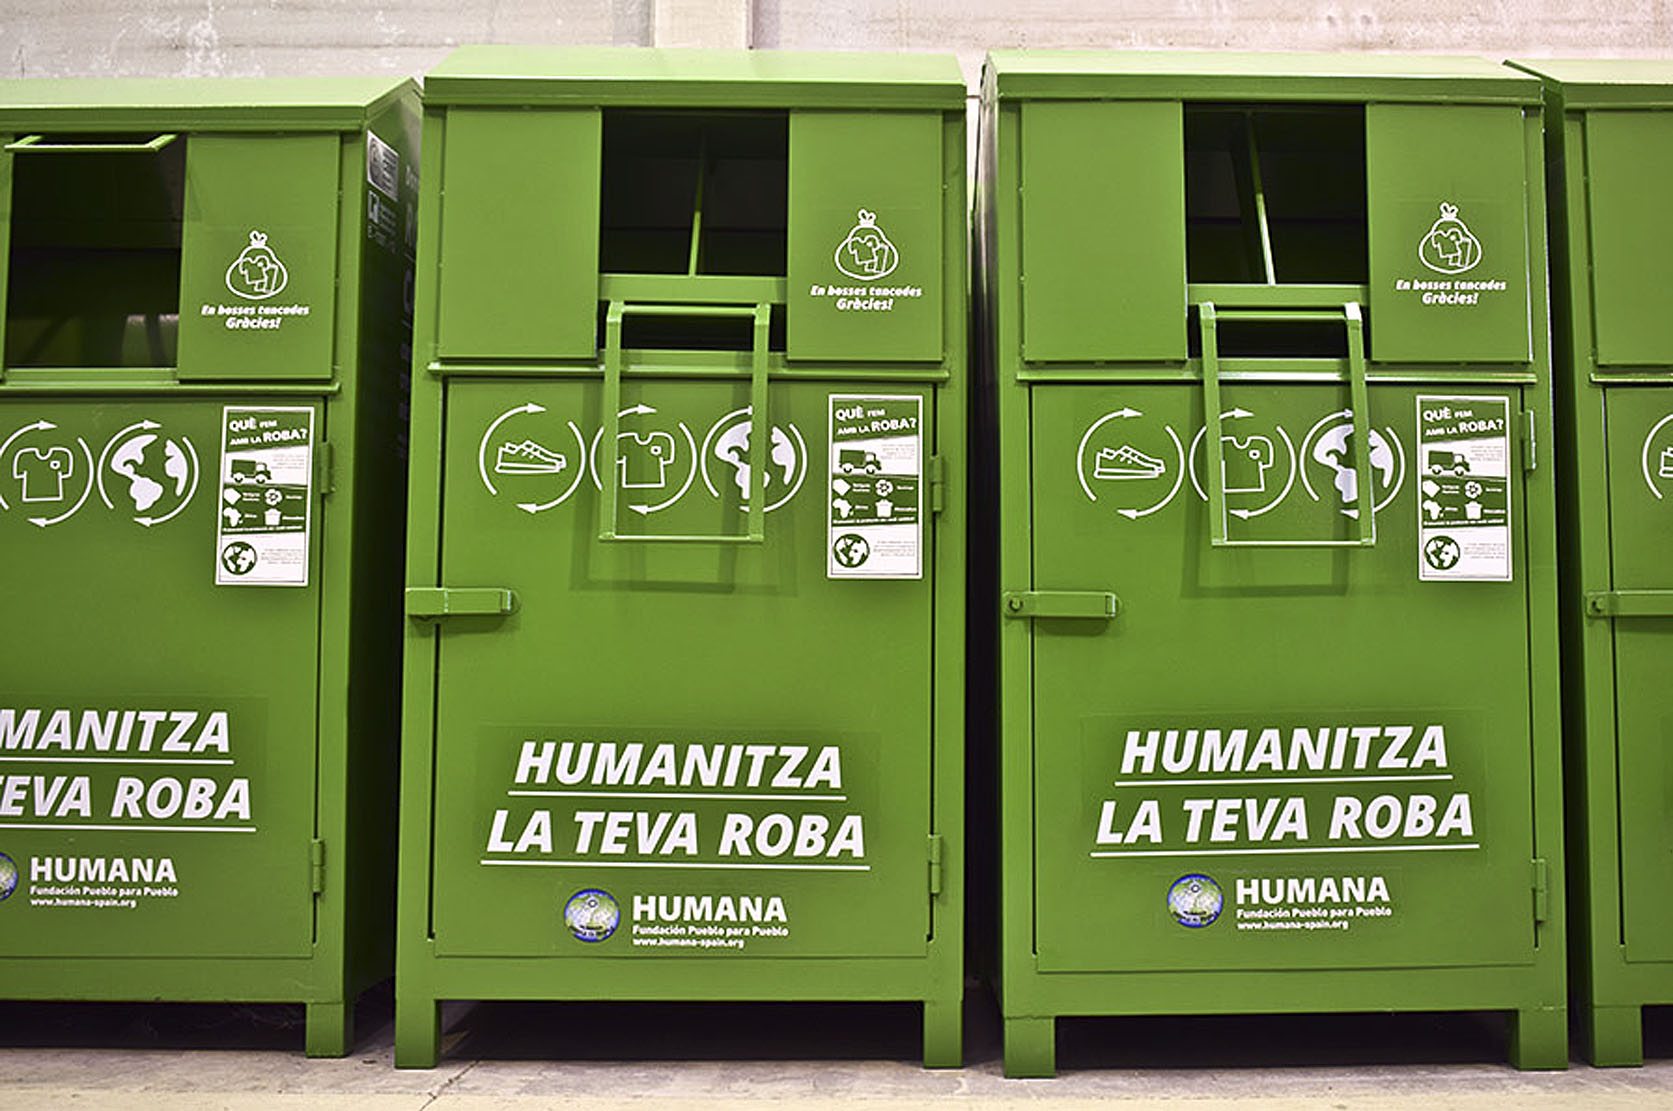 Els contenidors d'Humana estan instal·lats en una trentena de municipis de la comarca